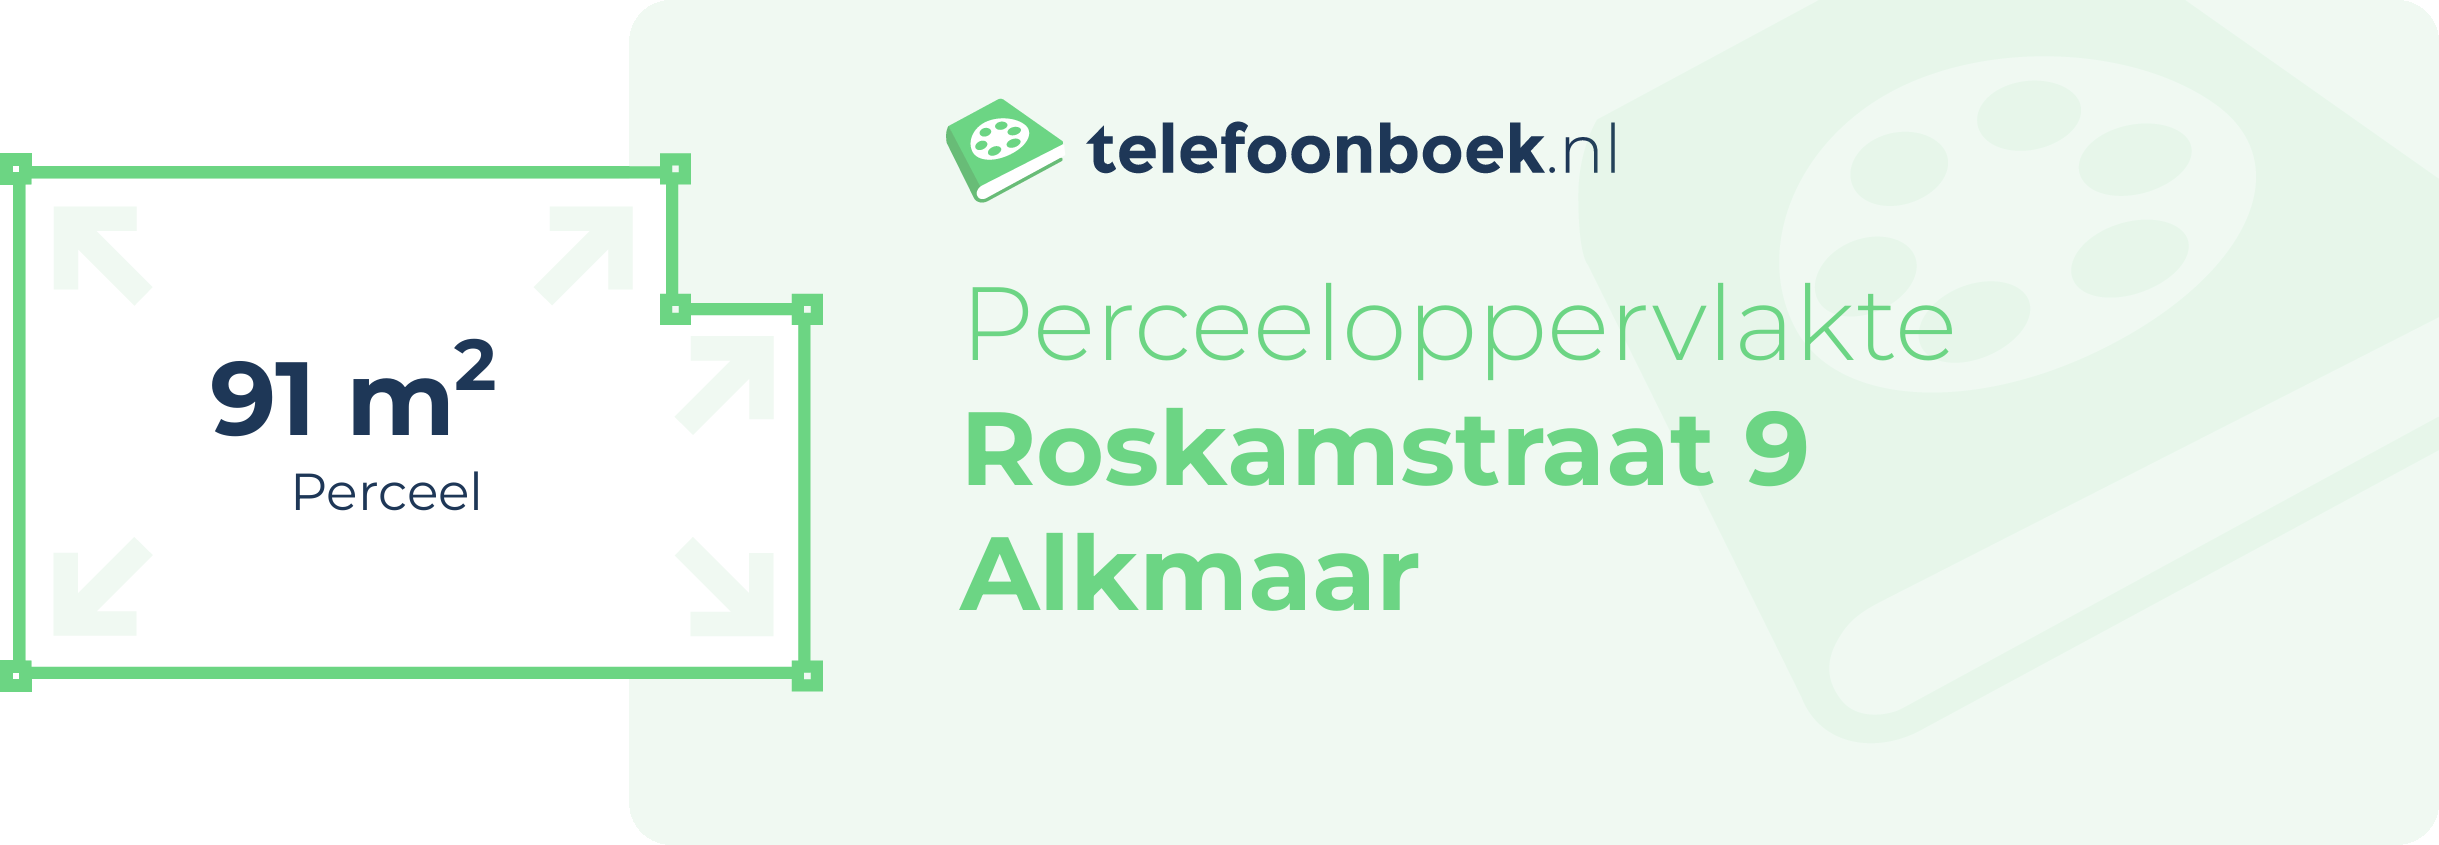 Perceeloppervlakte Roskamstraat 9 Alkmaar